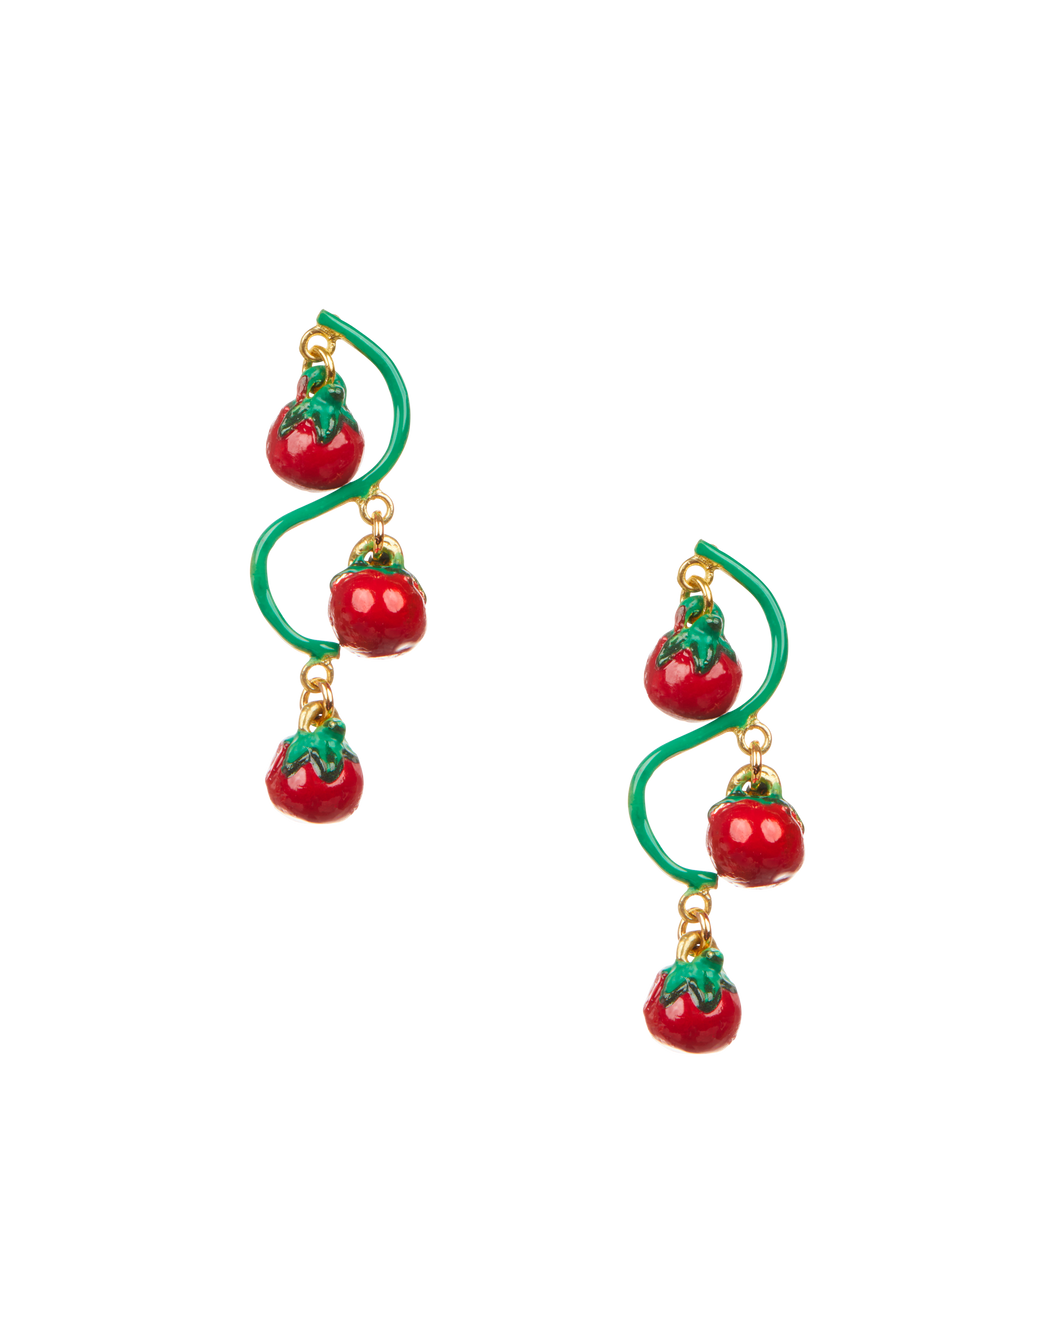 Tomato Vine Earrings